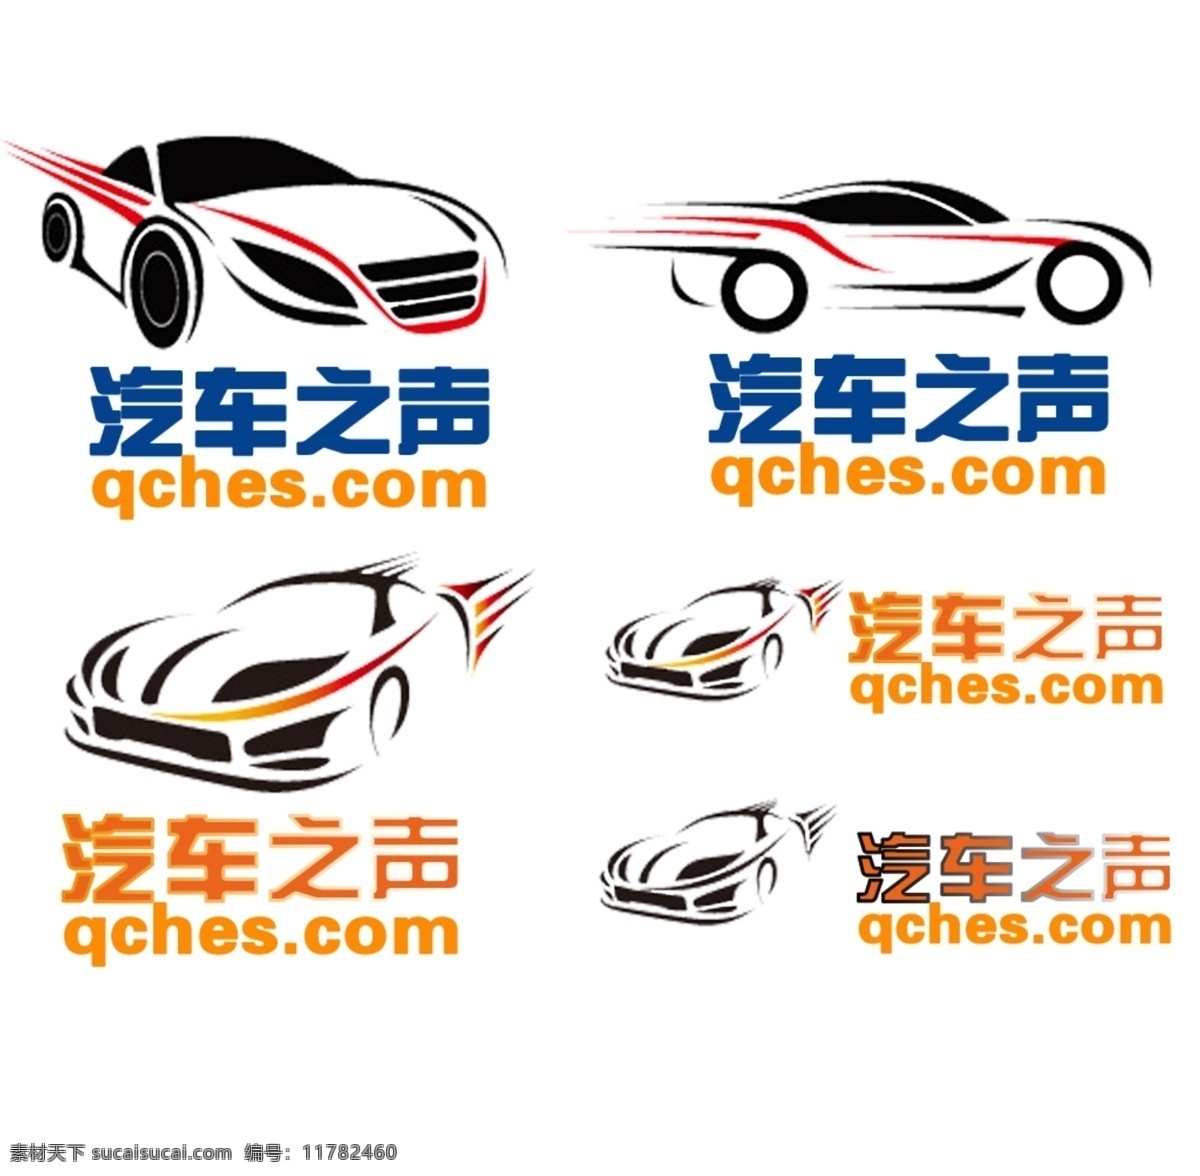 汽车标志 汽车 之声 logo 模板下载 二手车 网站